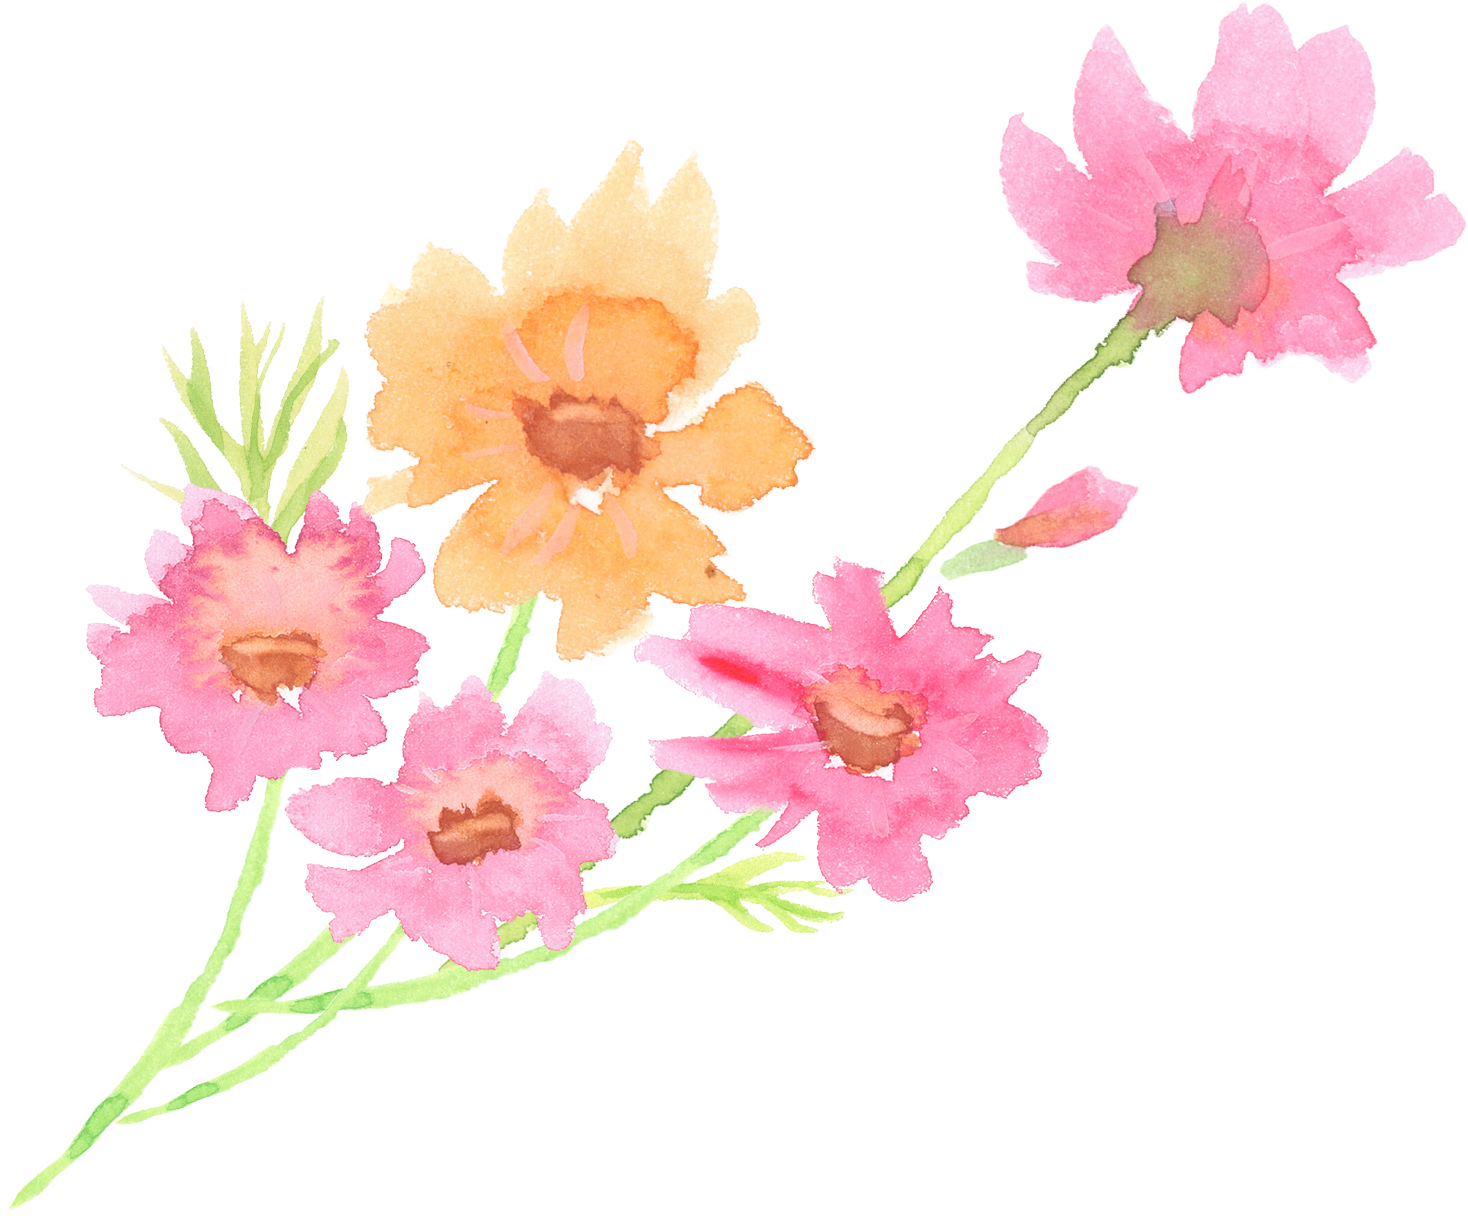 可愛いイラスト無料 水彩 コスモス 花 束 公式 イラスト素材サイト イラストダウンロード